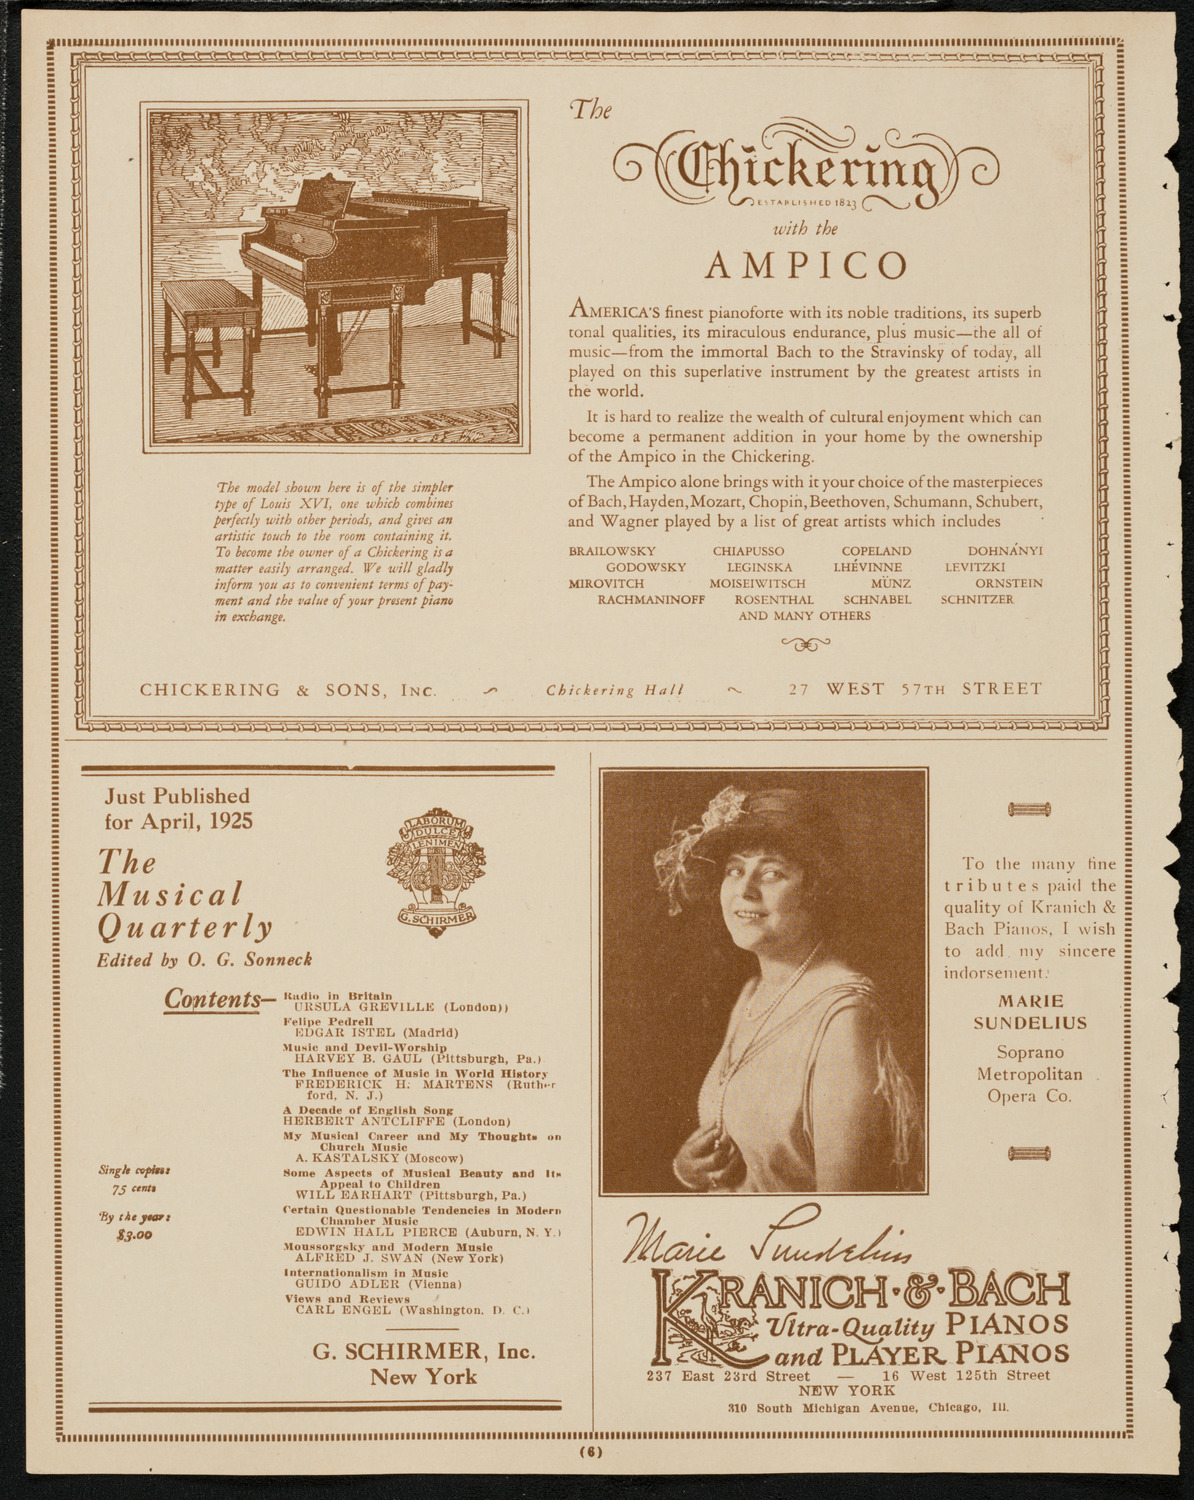 Boston Symphony Orchestra, April 11, 1925, program page 6